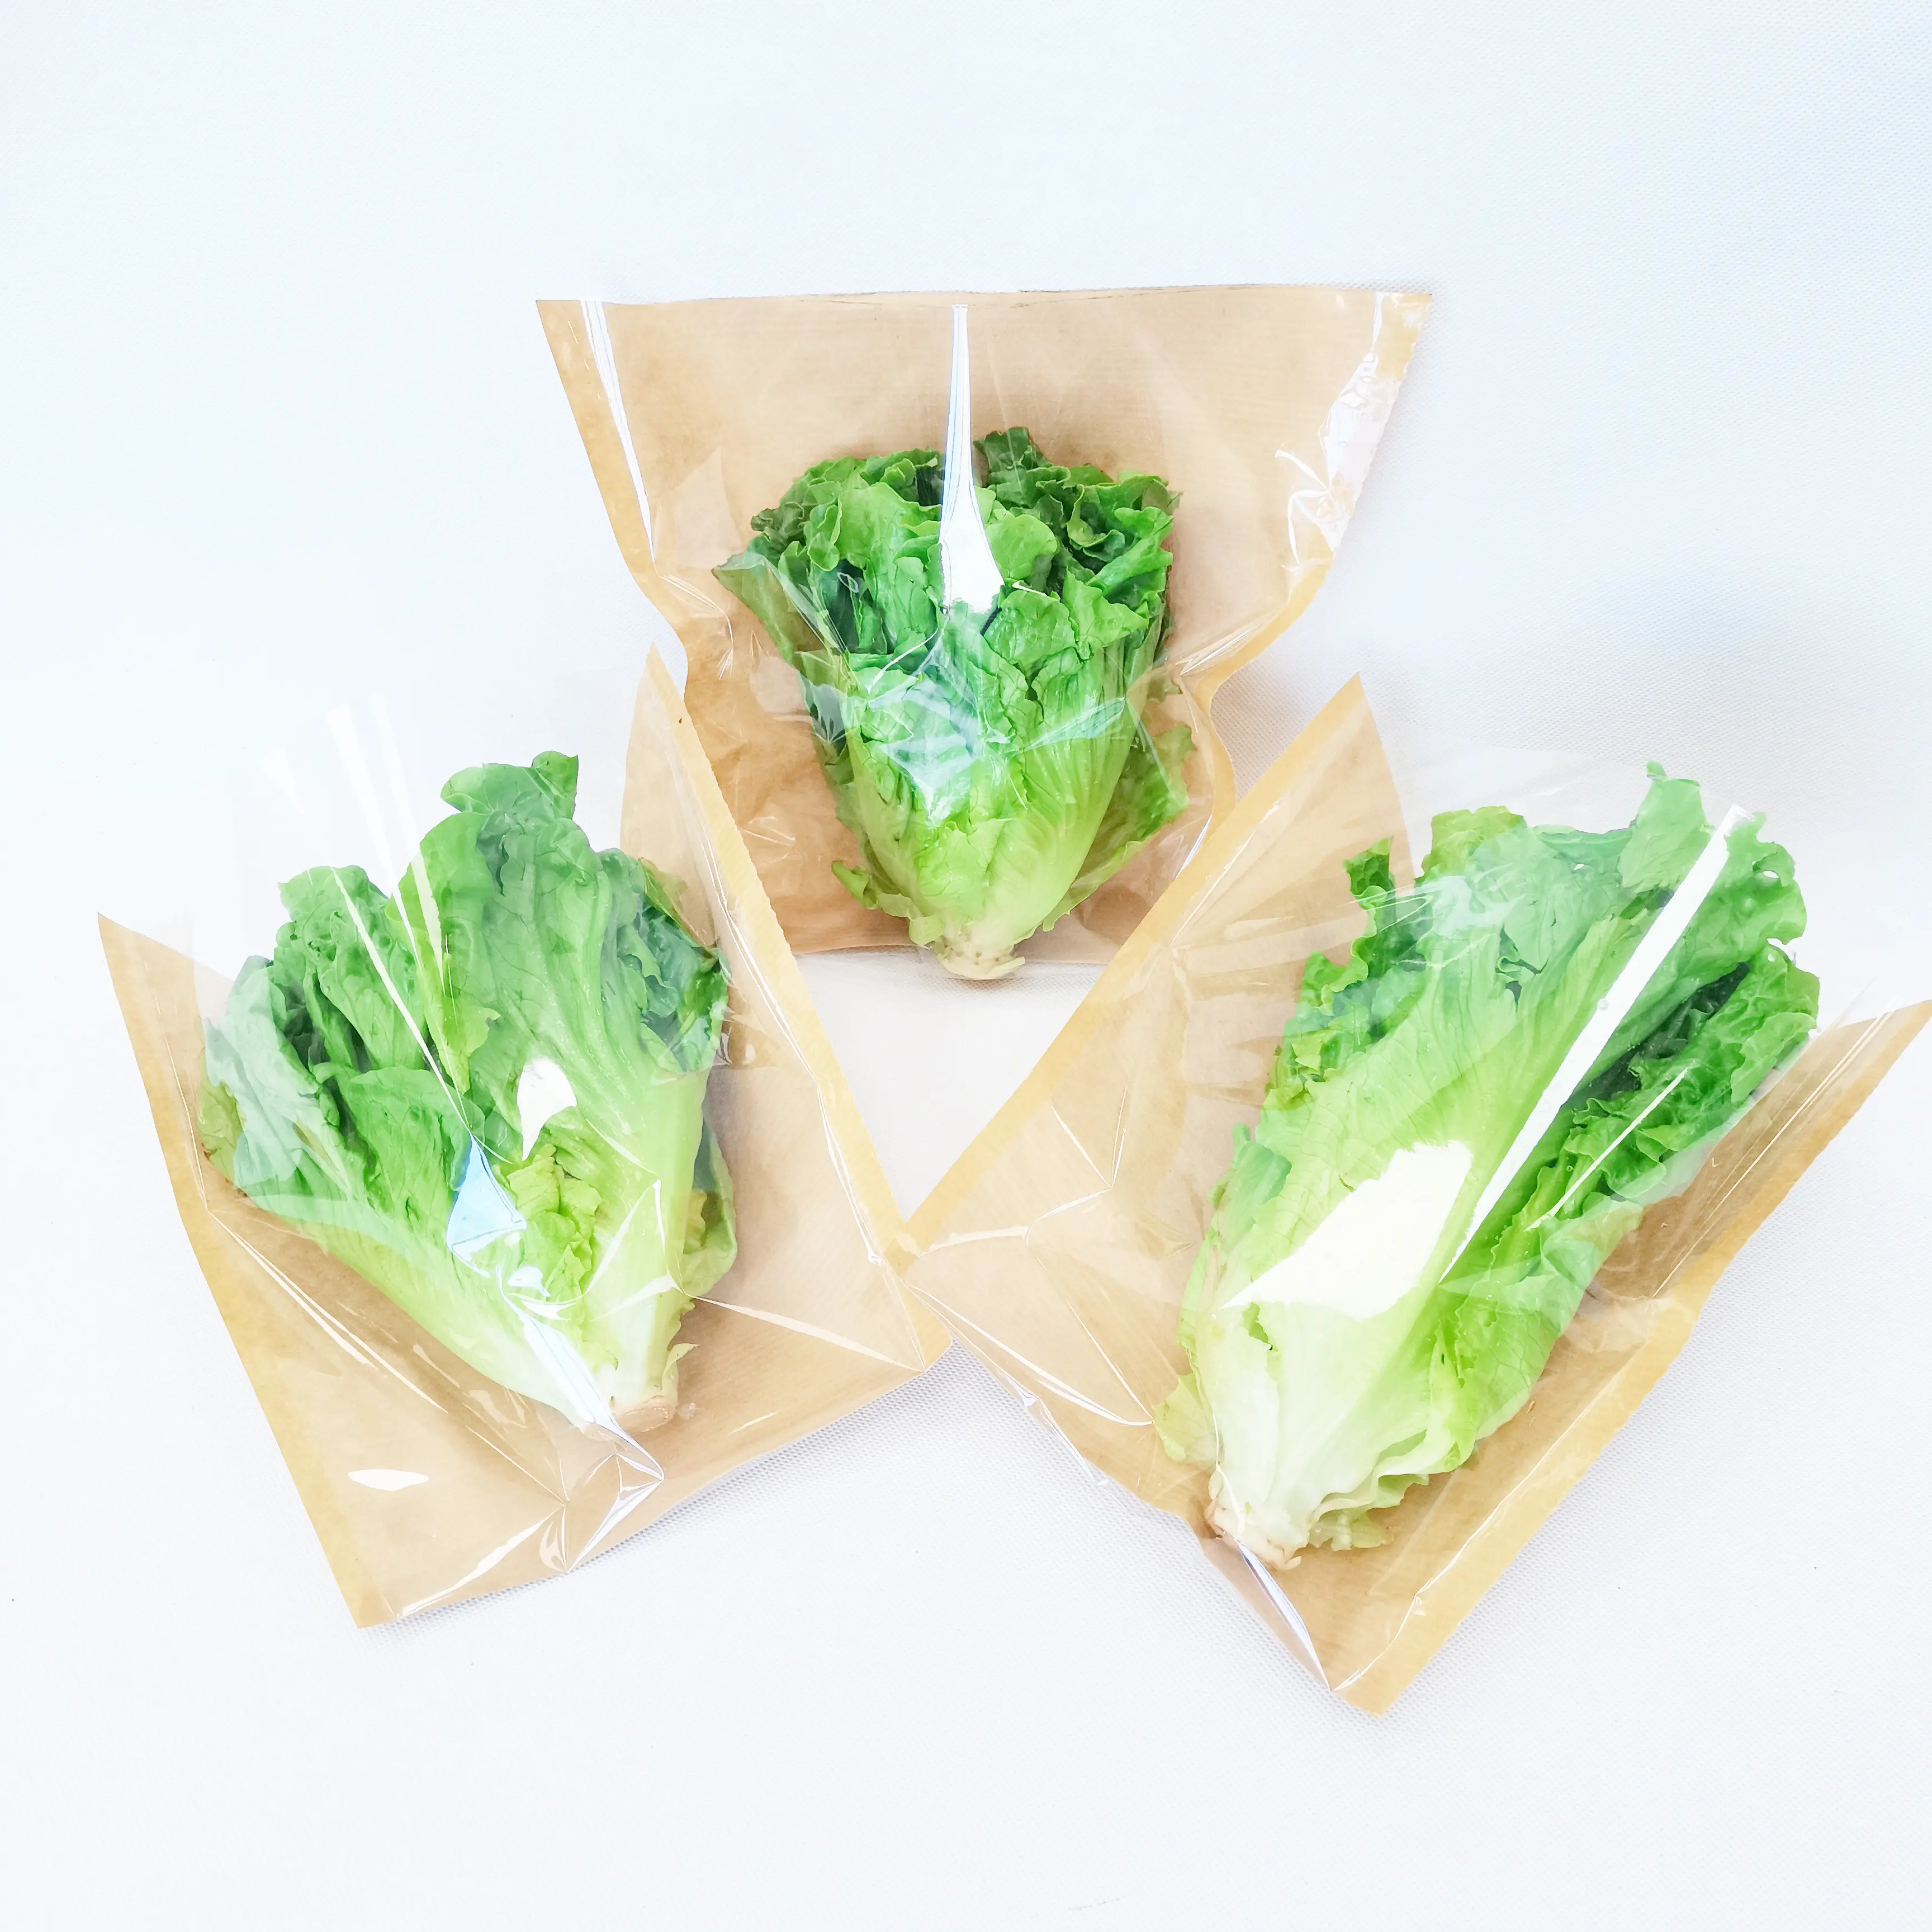 مخصص شفاف من البلاستيك بارد الخضروات الطازجة المعيشة الخس الريحان الأعشاب الطازجة القابلة لإعادة التدوير بوب + ورق الكرافت كيس مخروط النصيبة الغذاء باك